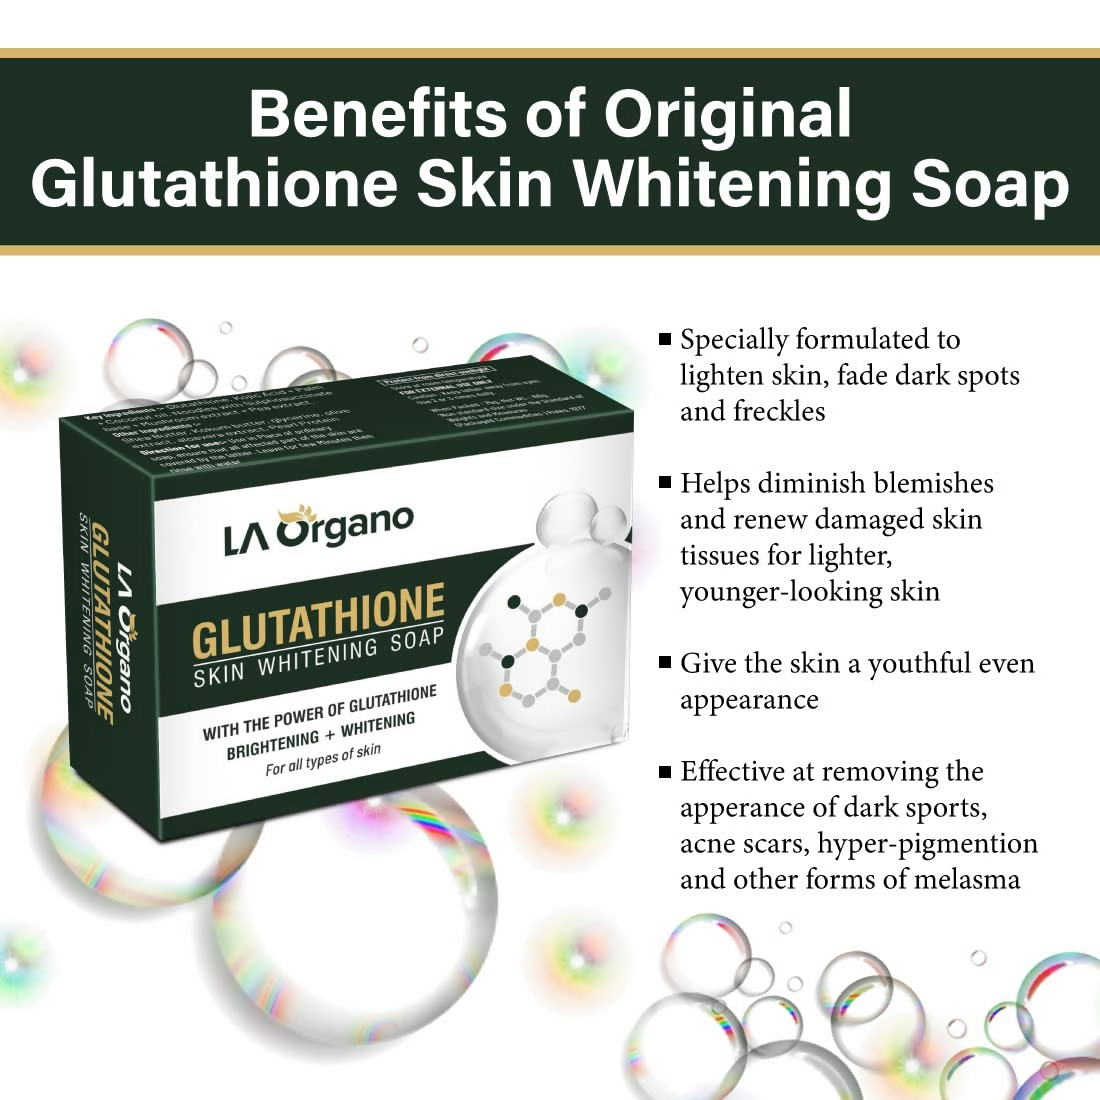 LA Organo Glutathione Skin Whitening Soap